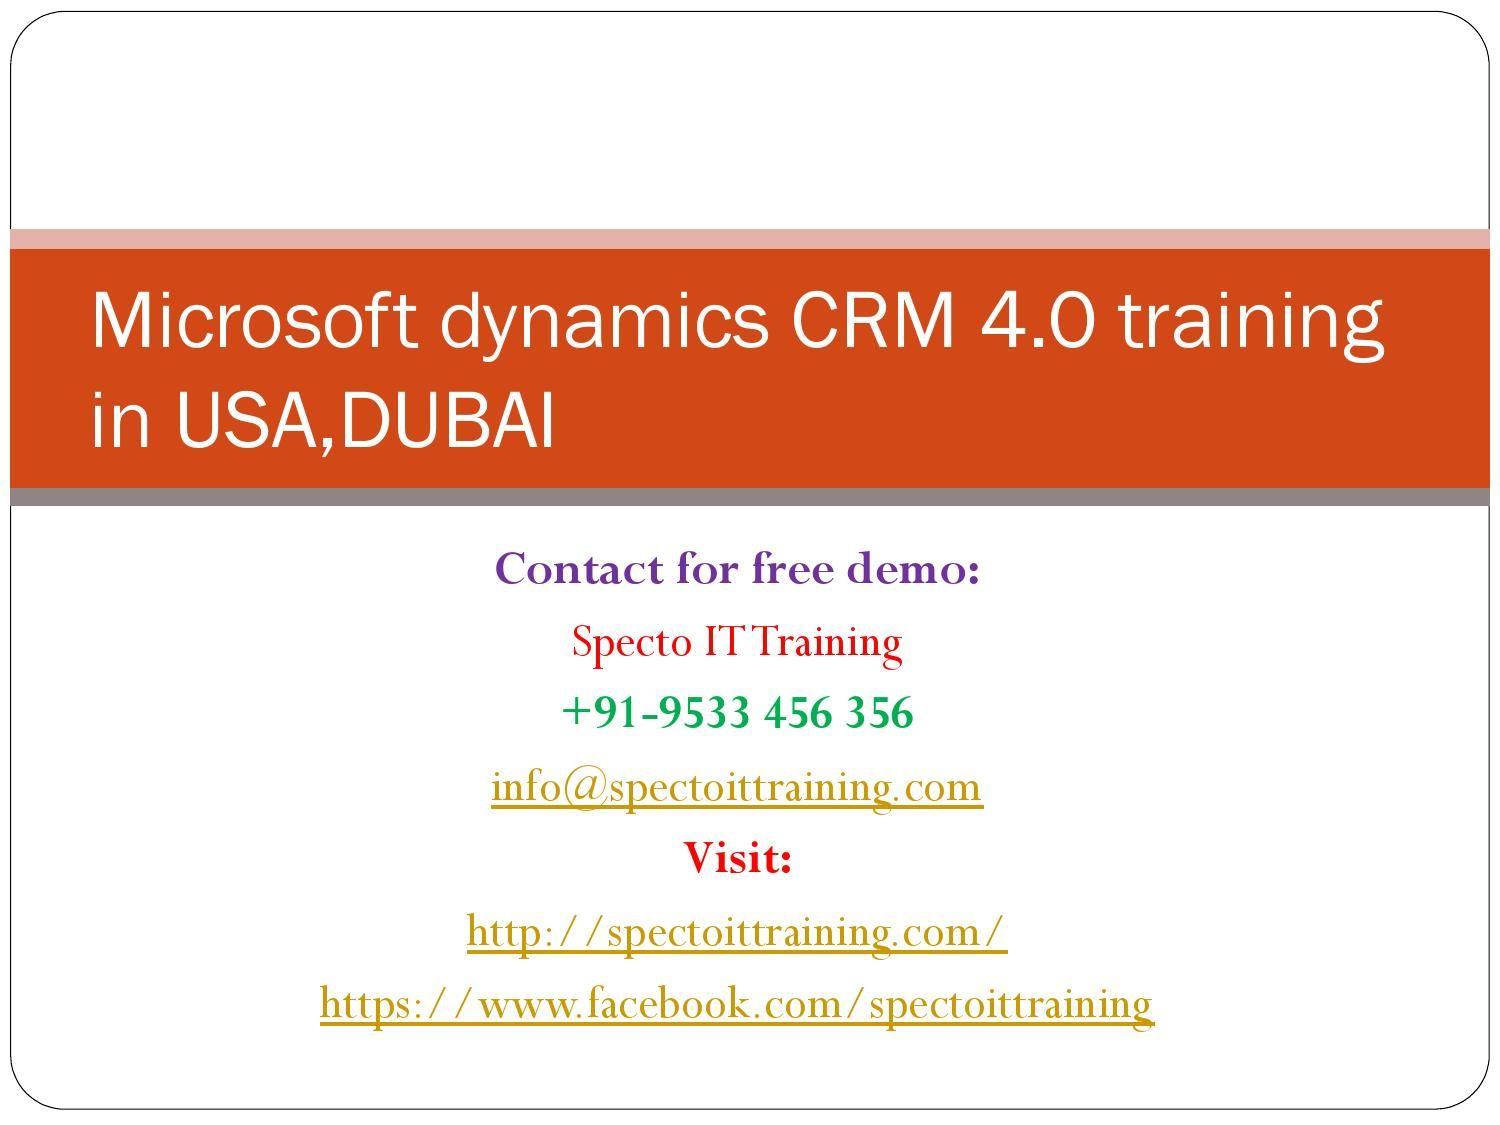 Microsoft Dynamics CRM 4 0 Logo - Microsoft dynamics crm 4 0 training in usa dubai by spectoscm - issuu